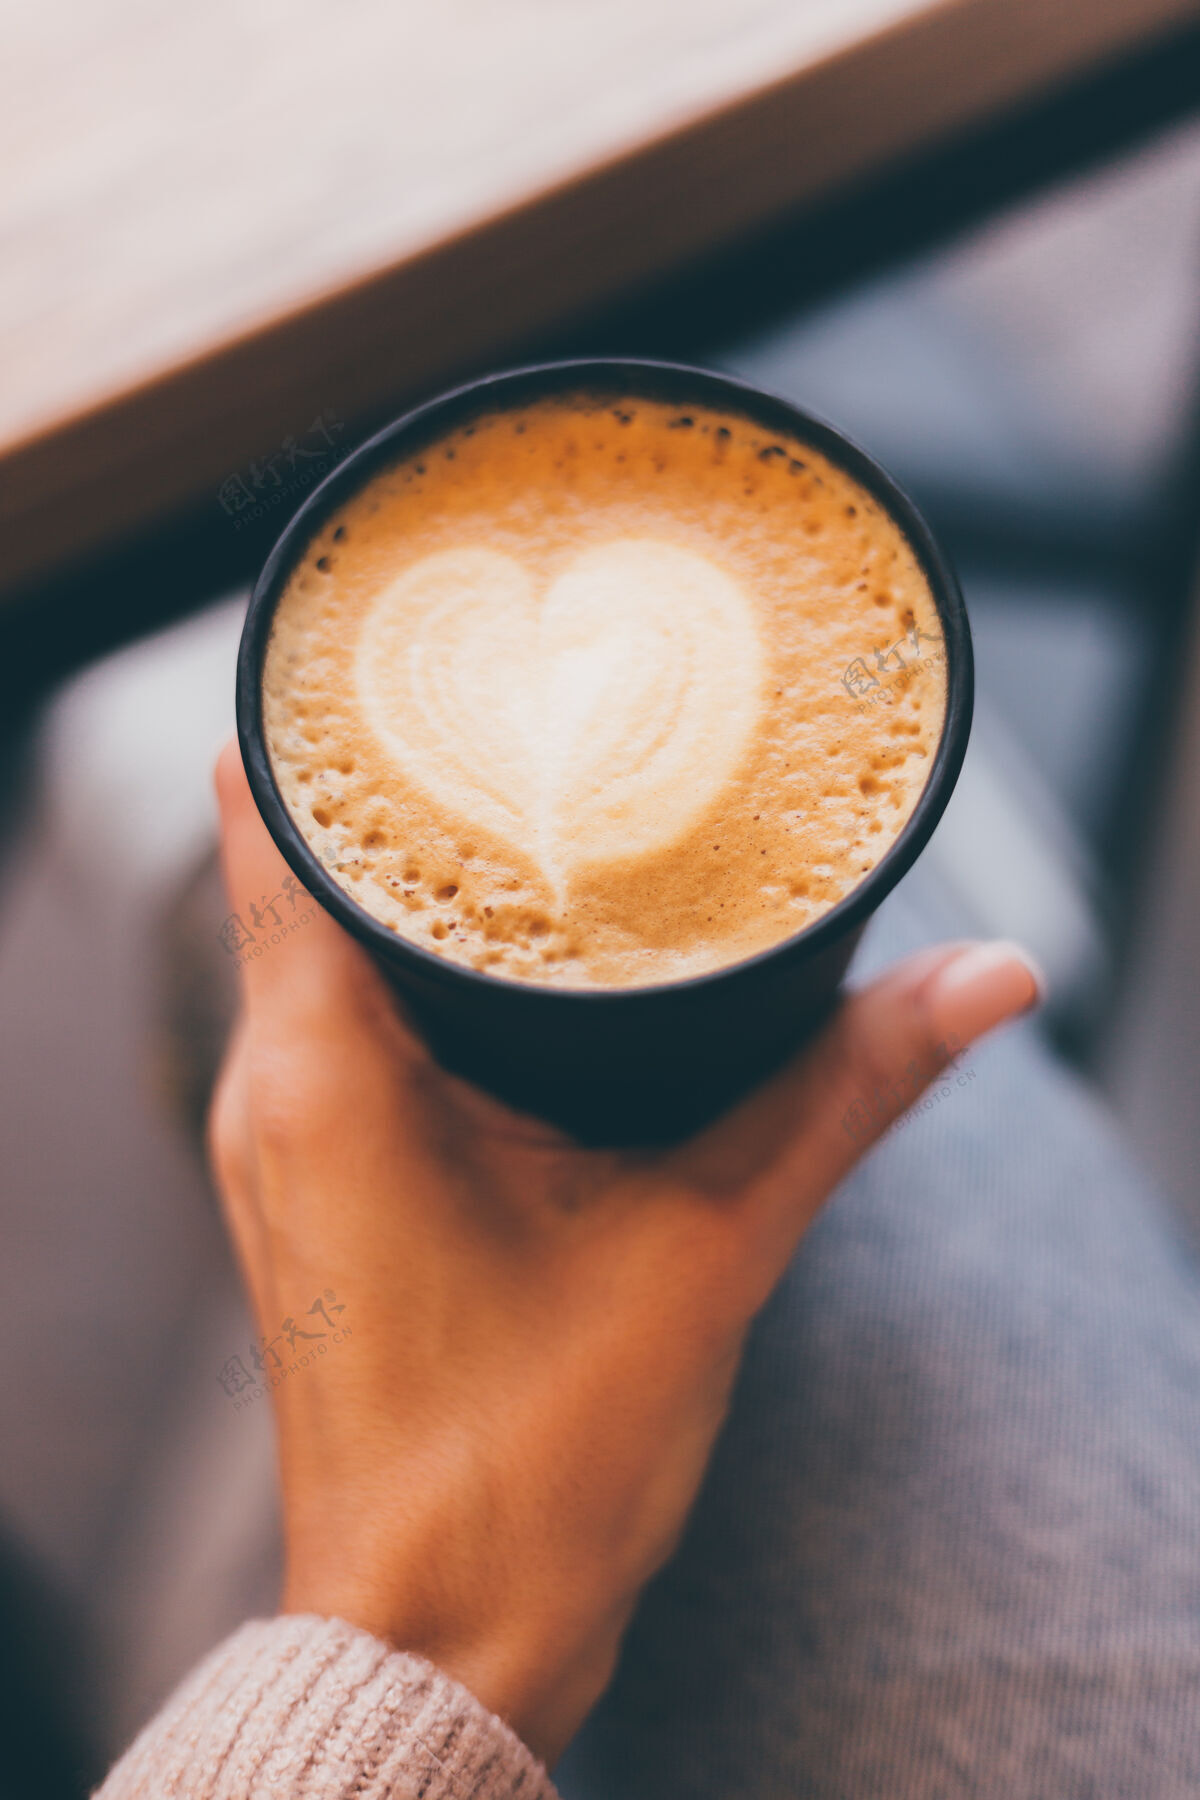 艺术镜头中的女人手拿一杯热咖啡 用泡沫做成的心形图案爱手咖啡店